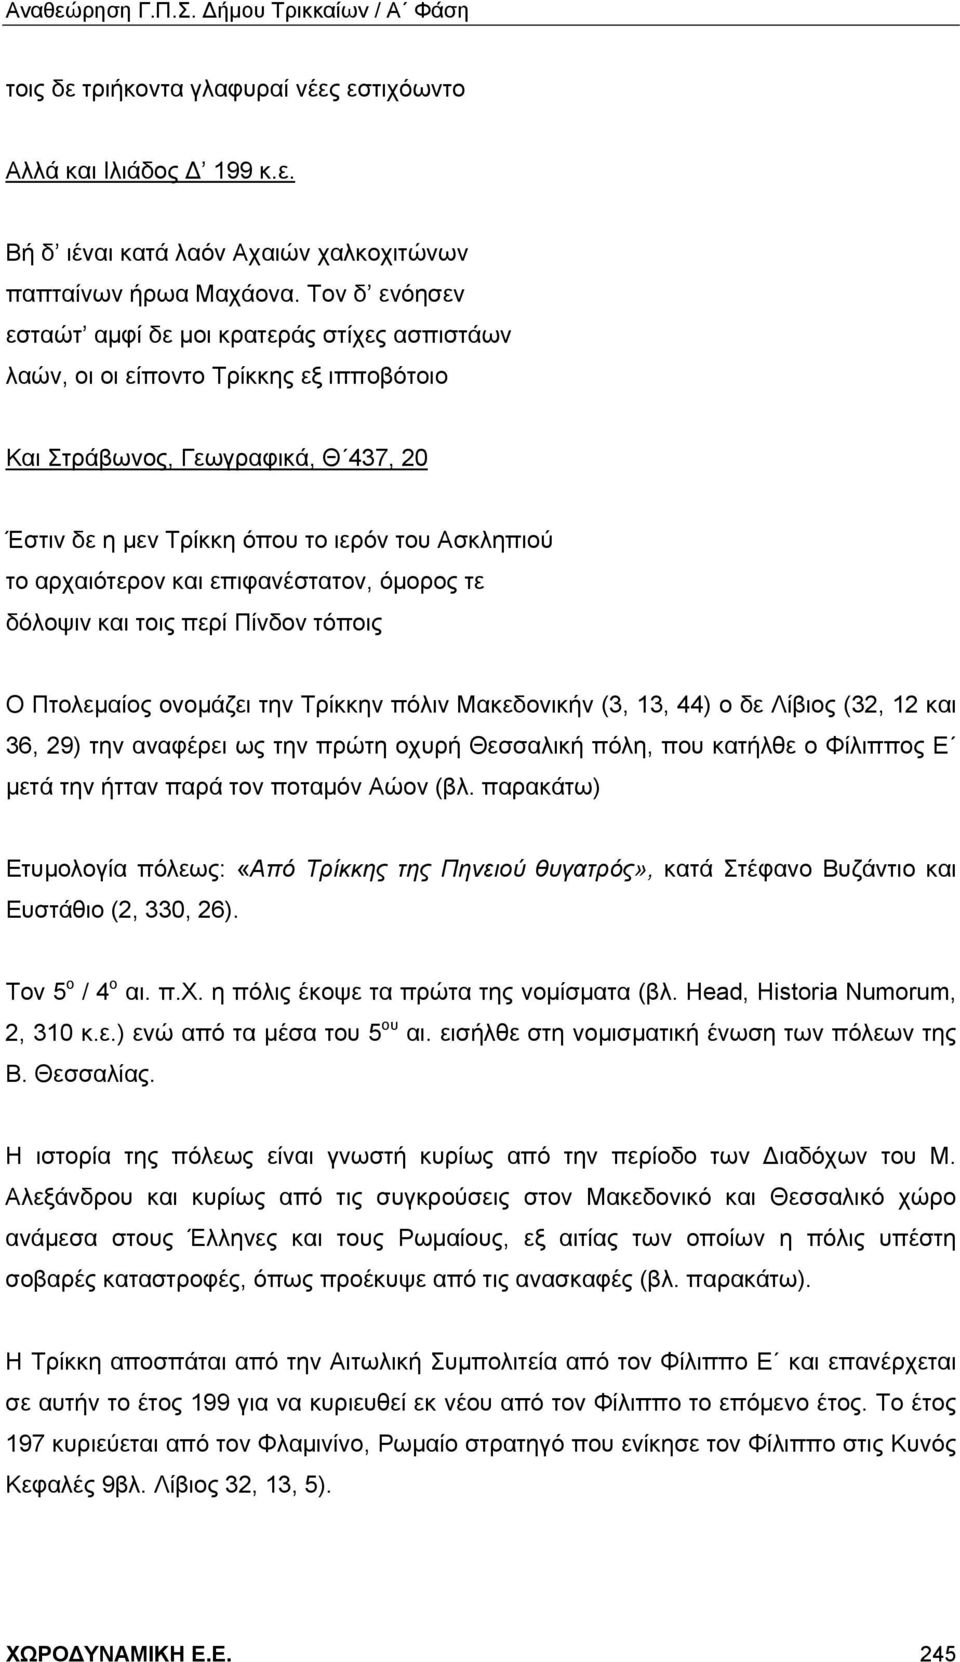 αρχαιότερον και επιφανέστατον, όμορος τε δόλοψιν και τοις περί Πίνδον τόποις Ο Πτολεμαίος ονομάζει την Τρίκκην πόλιν Μακεδονικήν (3, 13, 44) ο δε Λίβιος (32, 12 και 36, 29) την αναφέρει ως την πρώτη